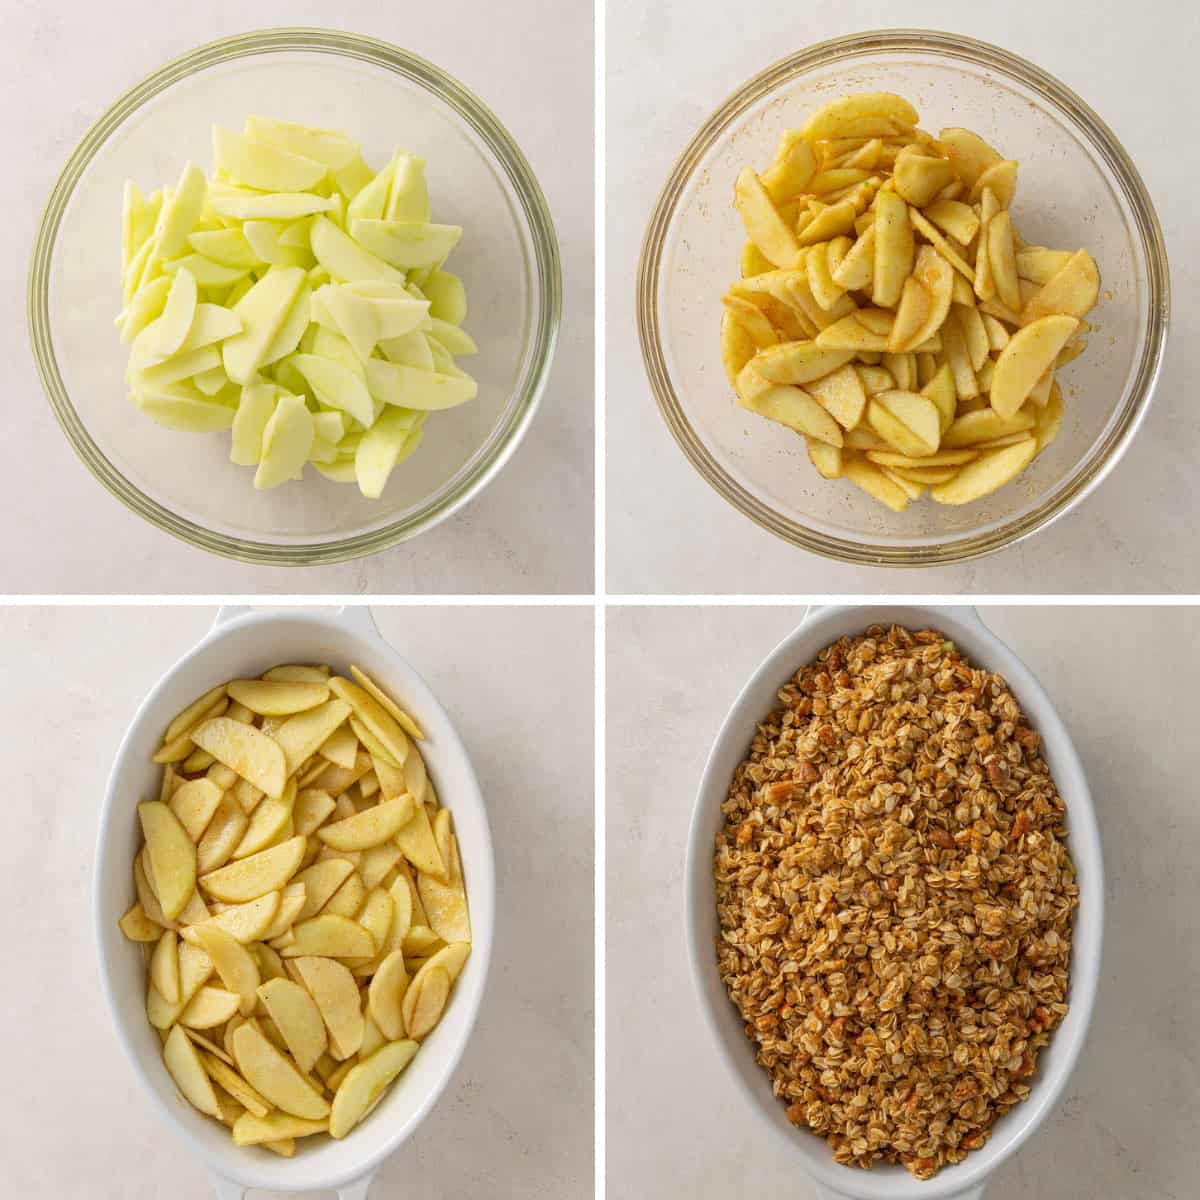 Steps showing how to make apple crisp.